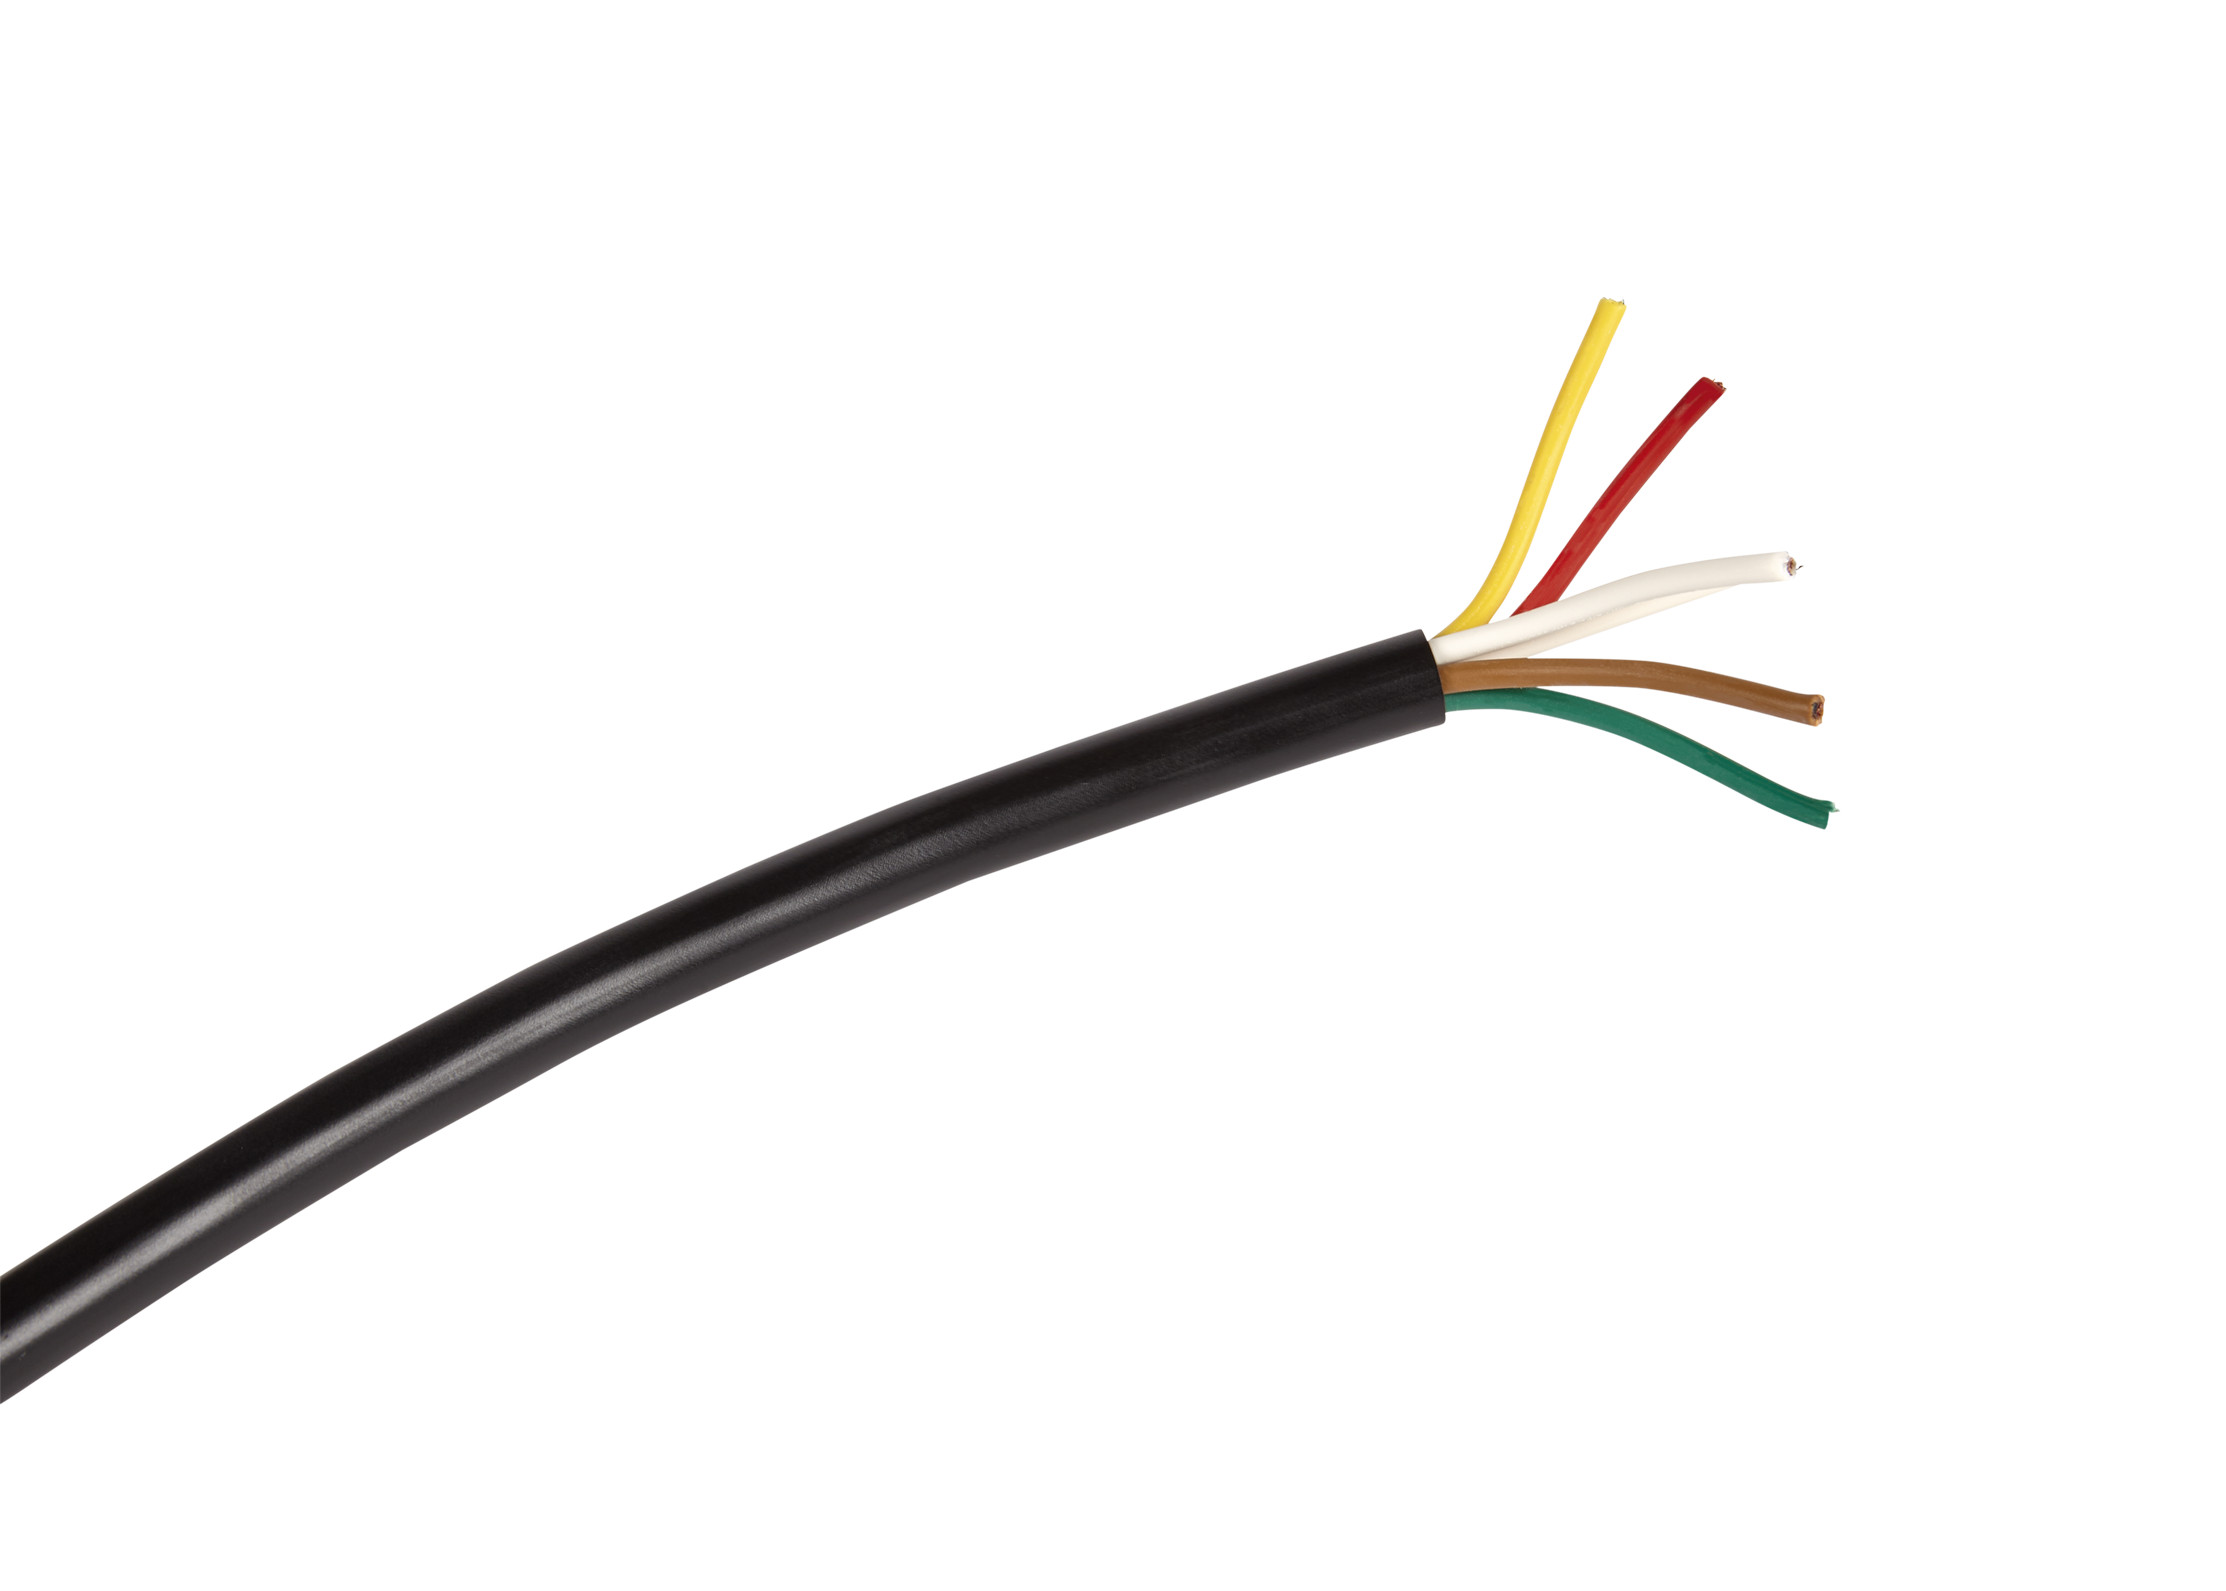 Kabel - 5x0.75mm² - 50m - wit/geel/rood/groen/bruin